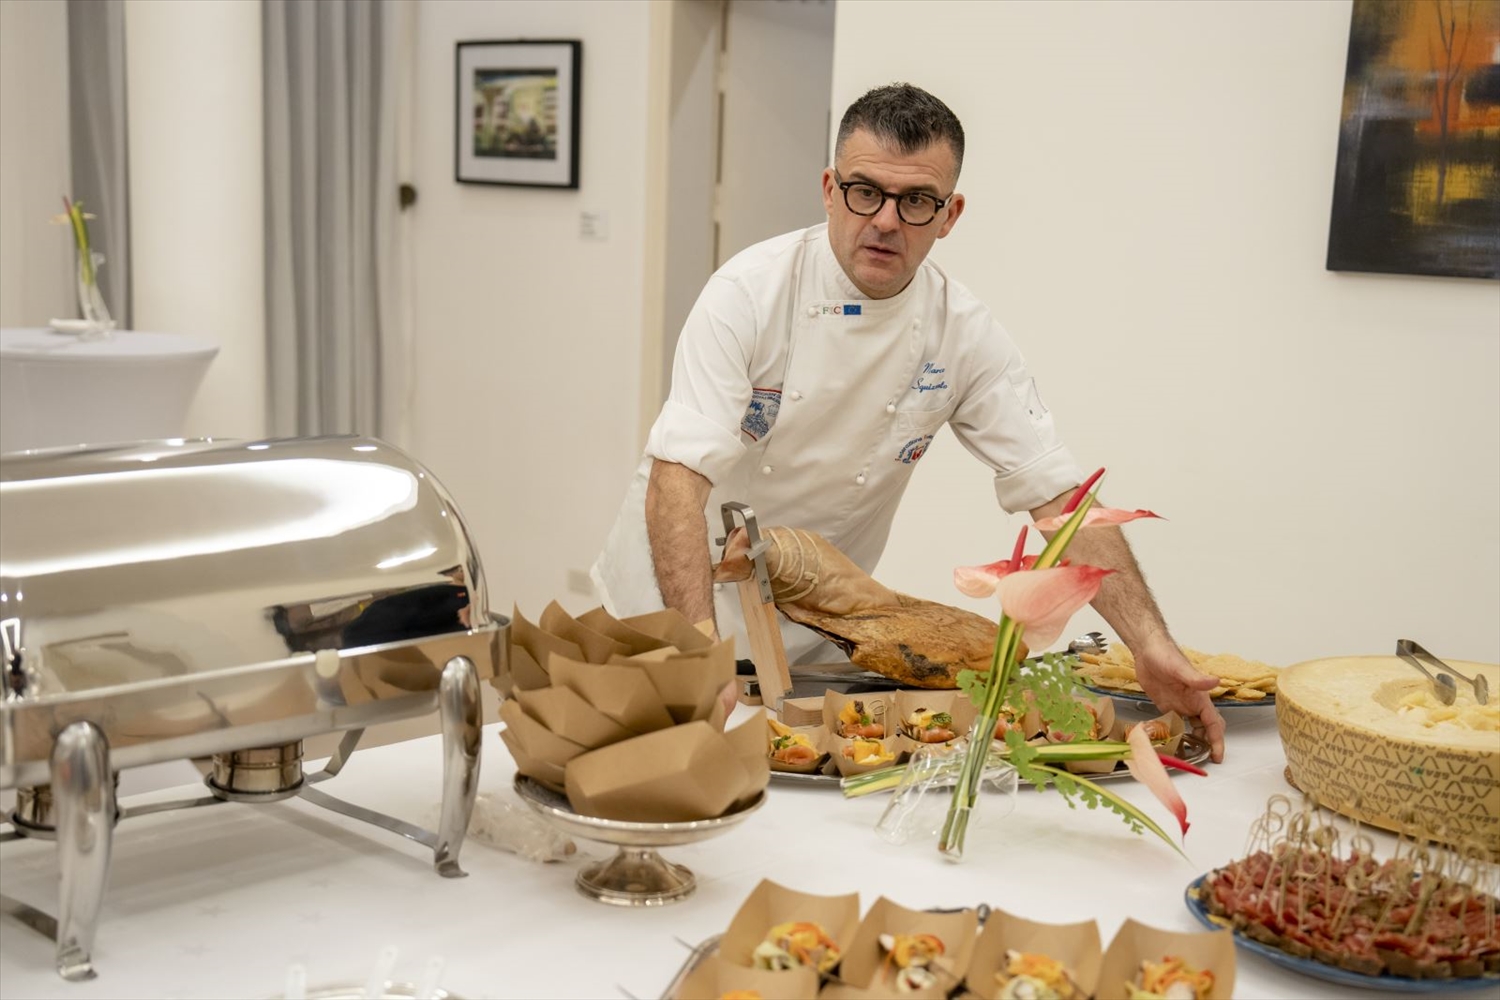 Đầu bếp Marco Squizzato, người đã có 20 năm kinh nghiệm làm bếp trưởng giới thiệu các món ăn trong Tuần lễ Ẩm thực Ý tại Việt Nam